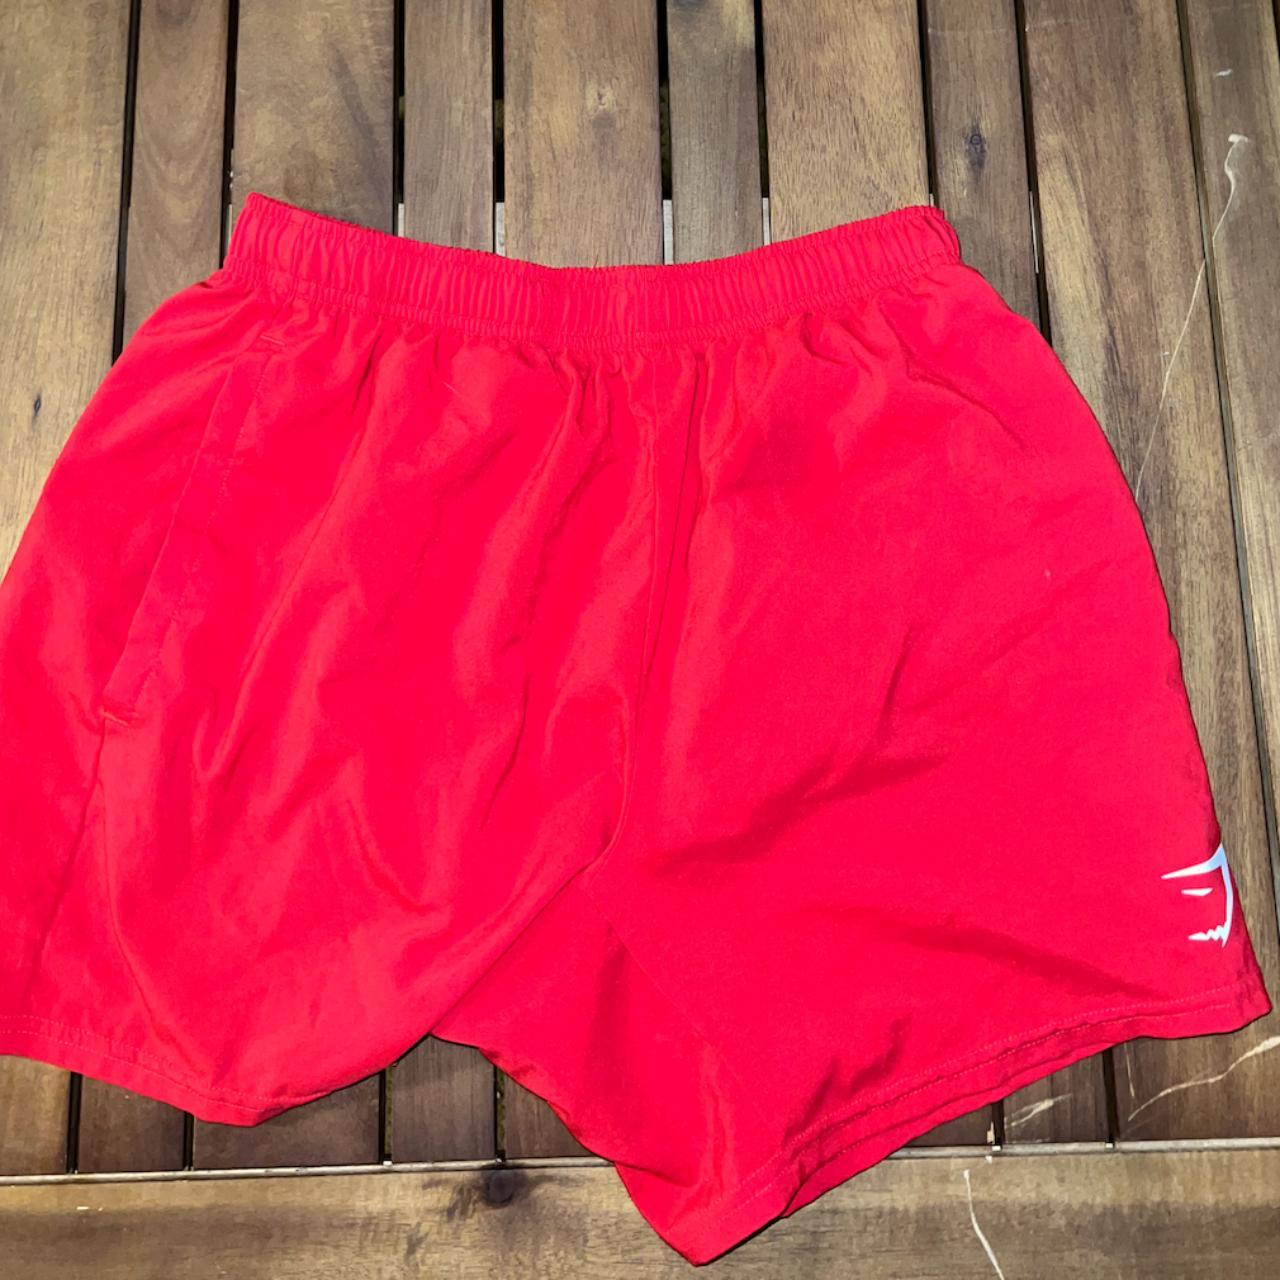 Gymshark Men's Red Shorts | Depop